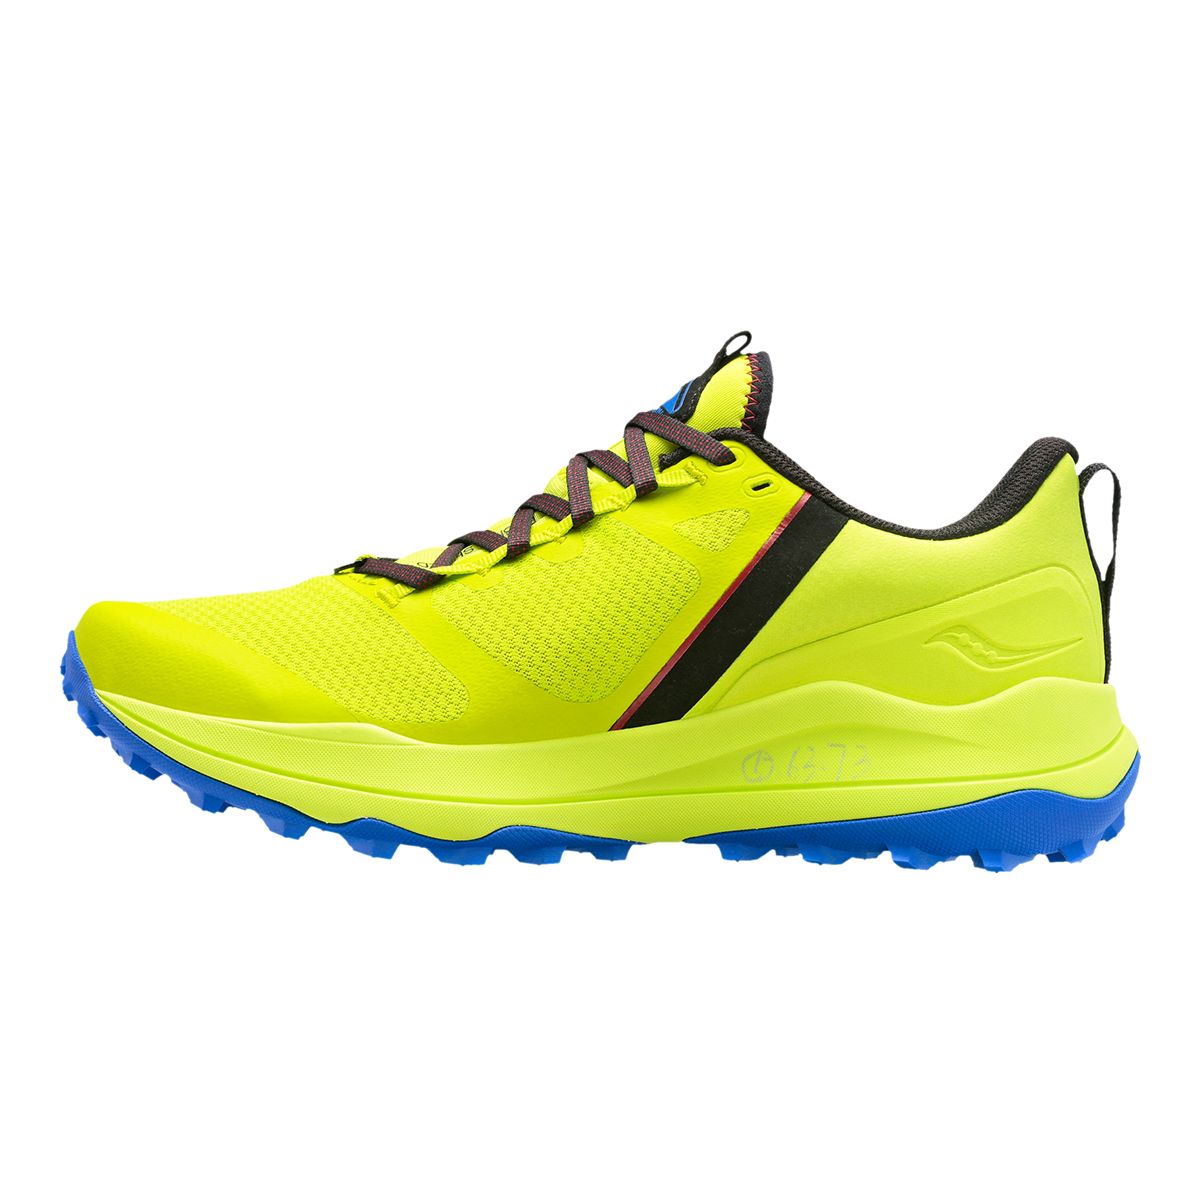 Saucony Men's Xodus Ultra Lightweight Flexible Trail Running Shoes